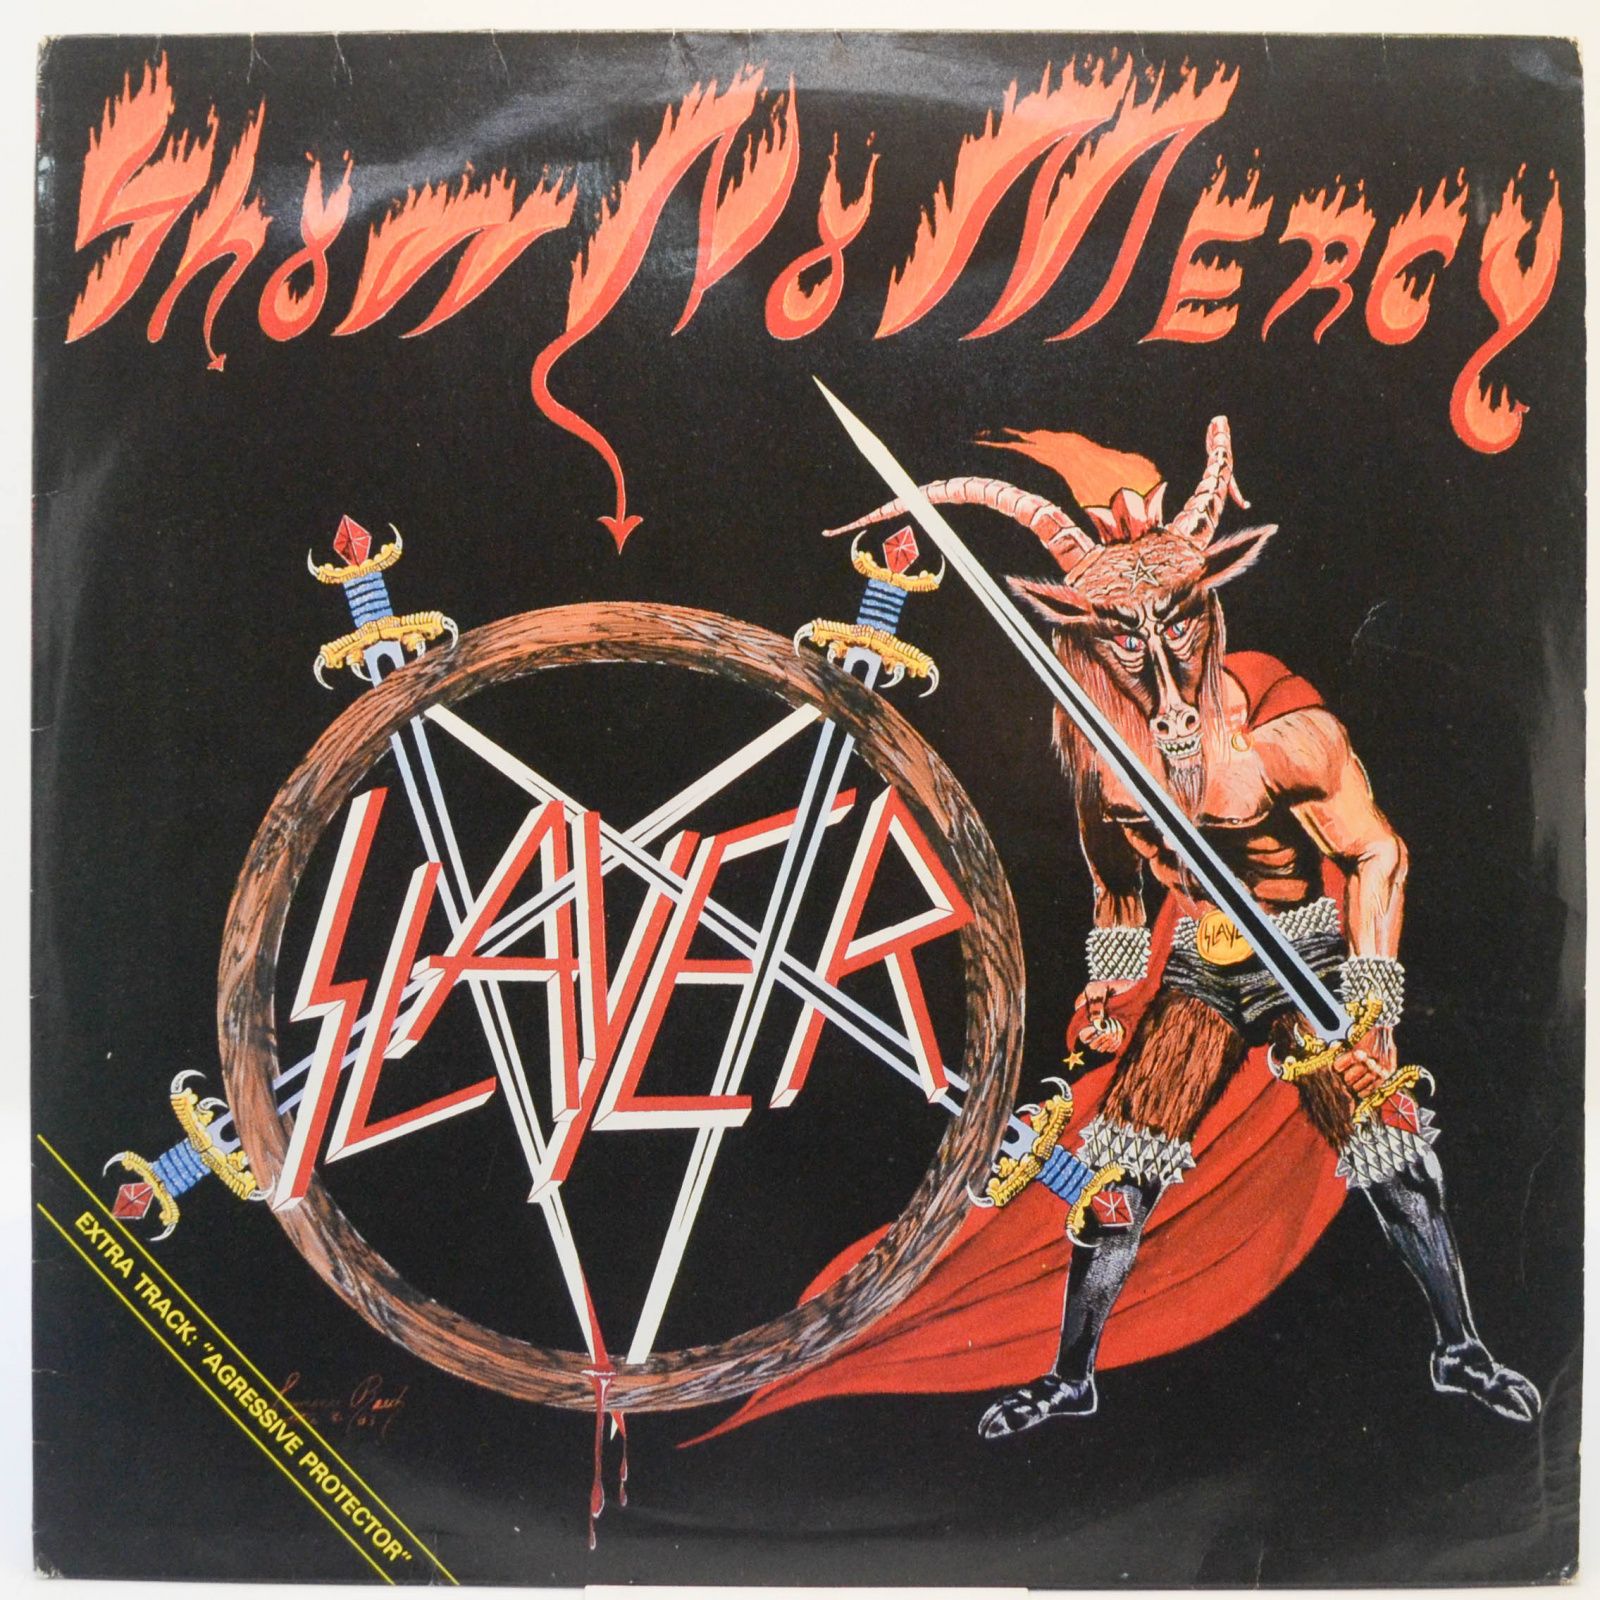 Show No Mercy, 1984